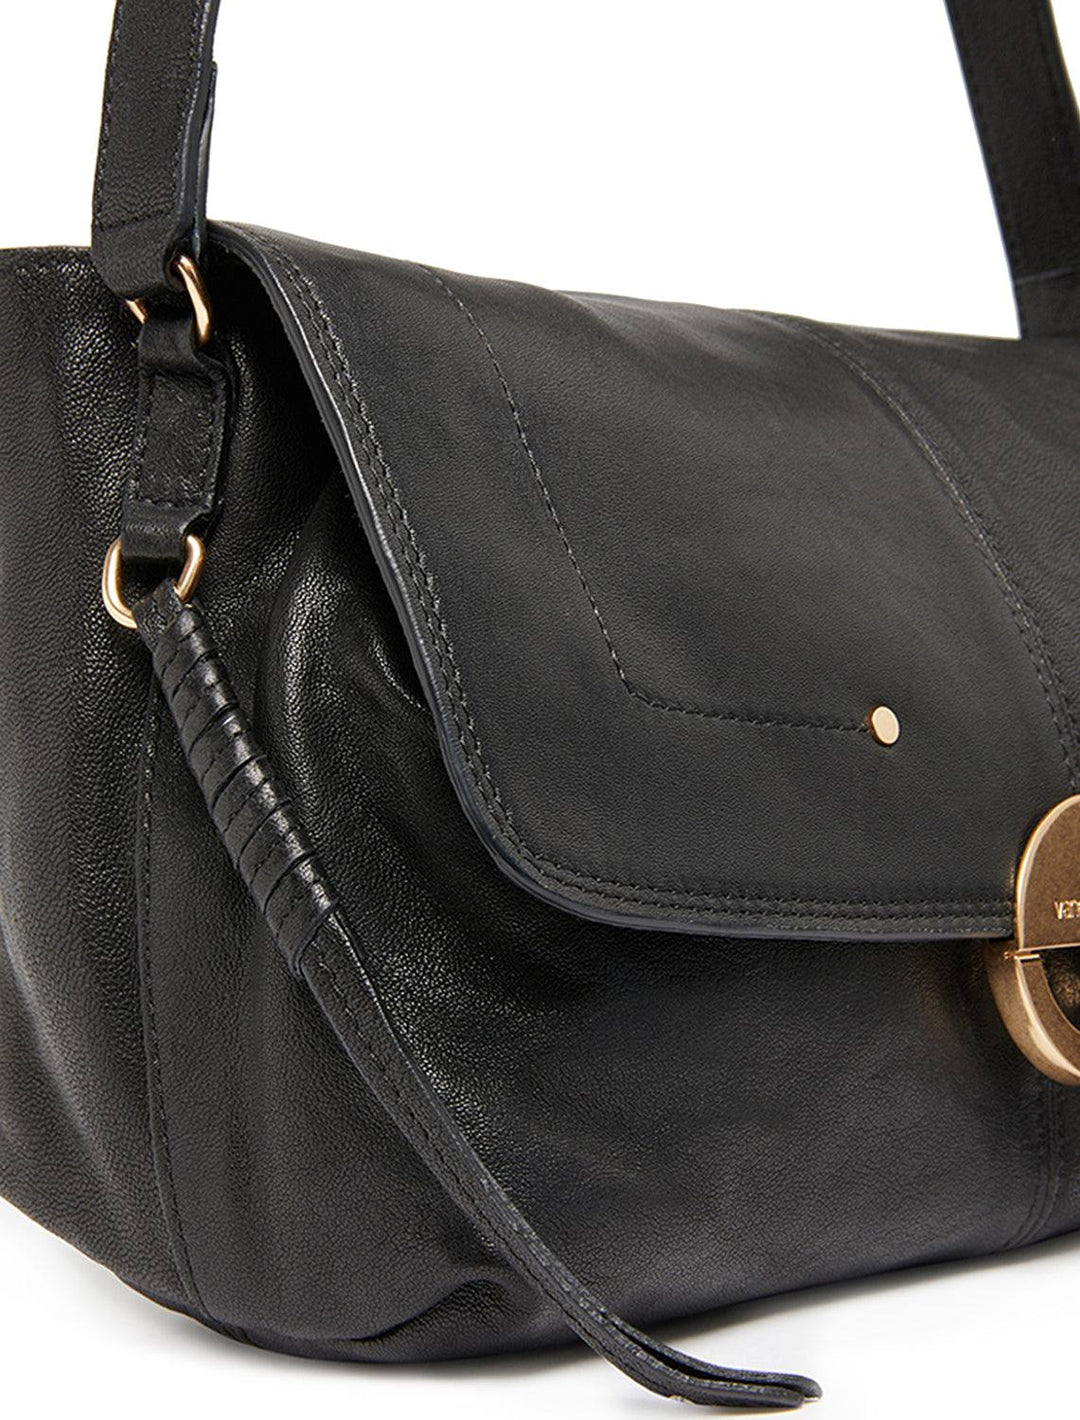 crossbody gm handbag in noir